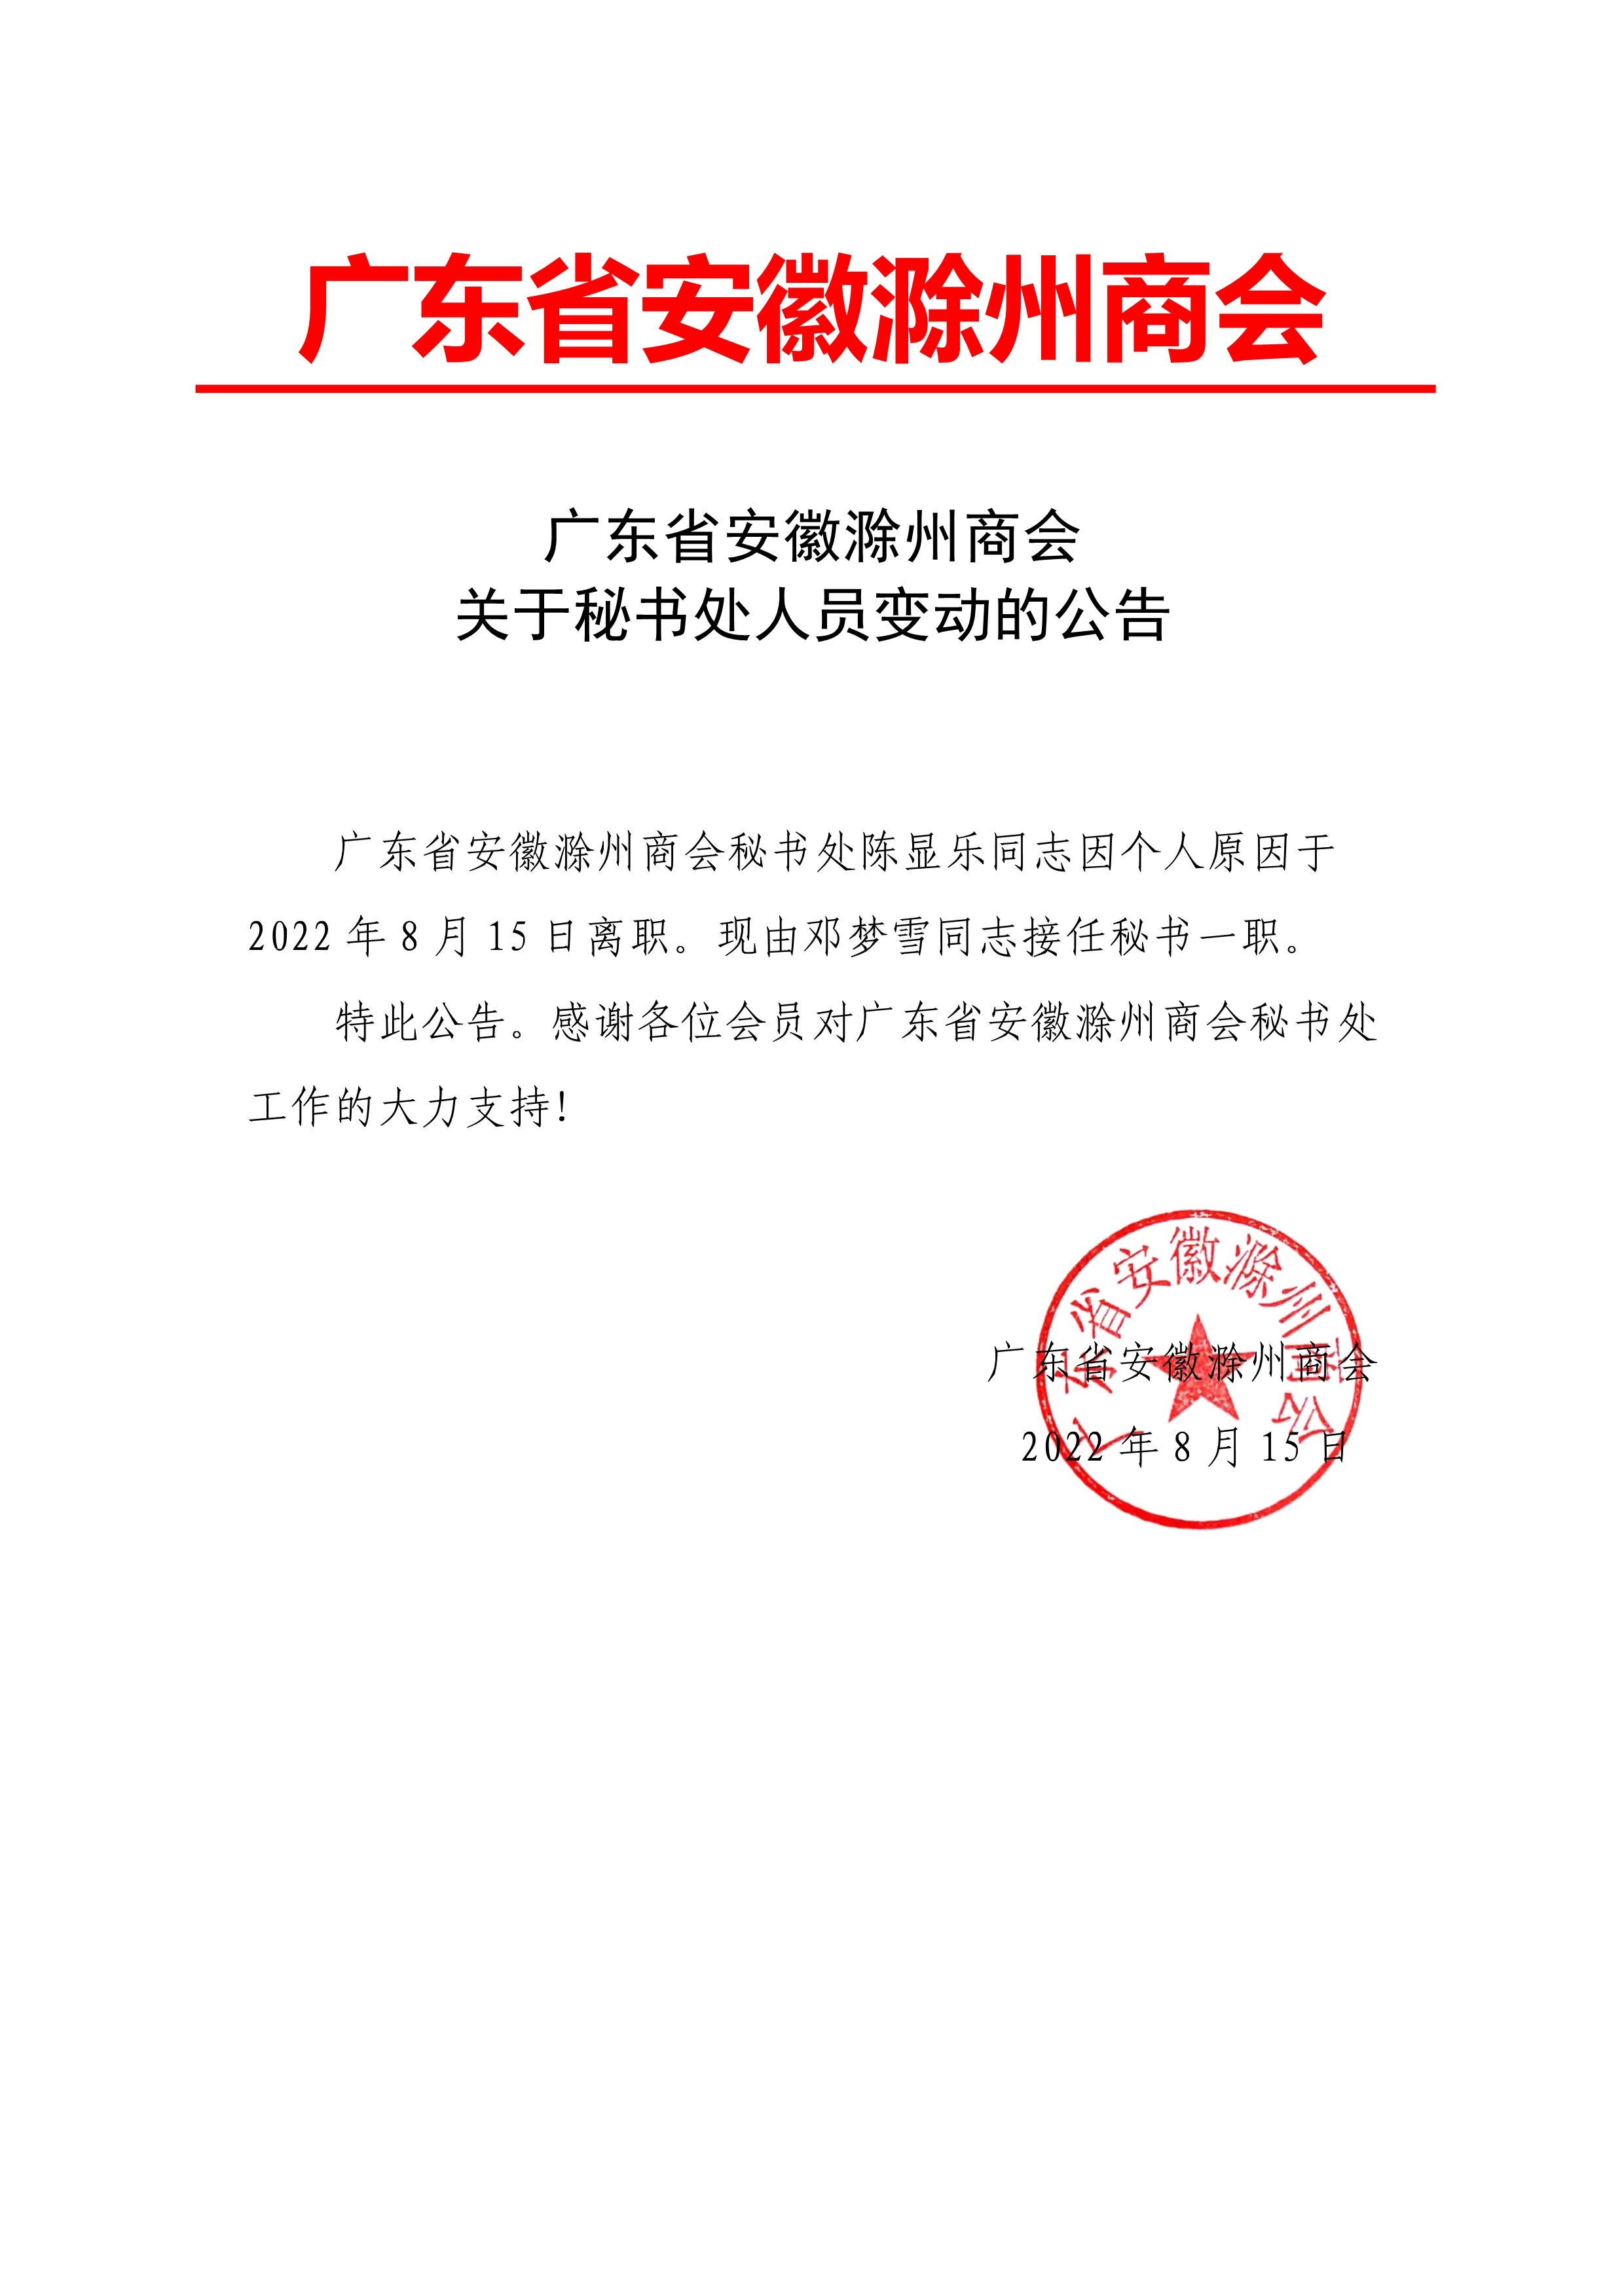 081510240885_0广东省安徽滁州商会关于秘书处人员变动的公告_1.Jpeg